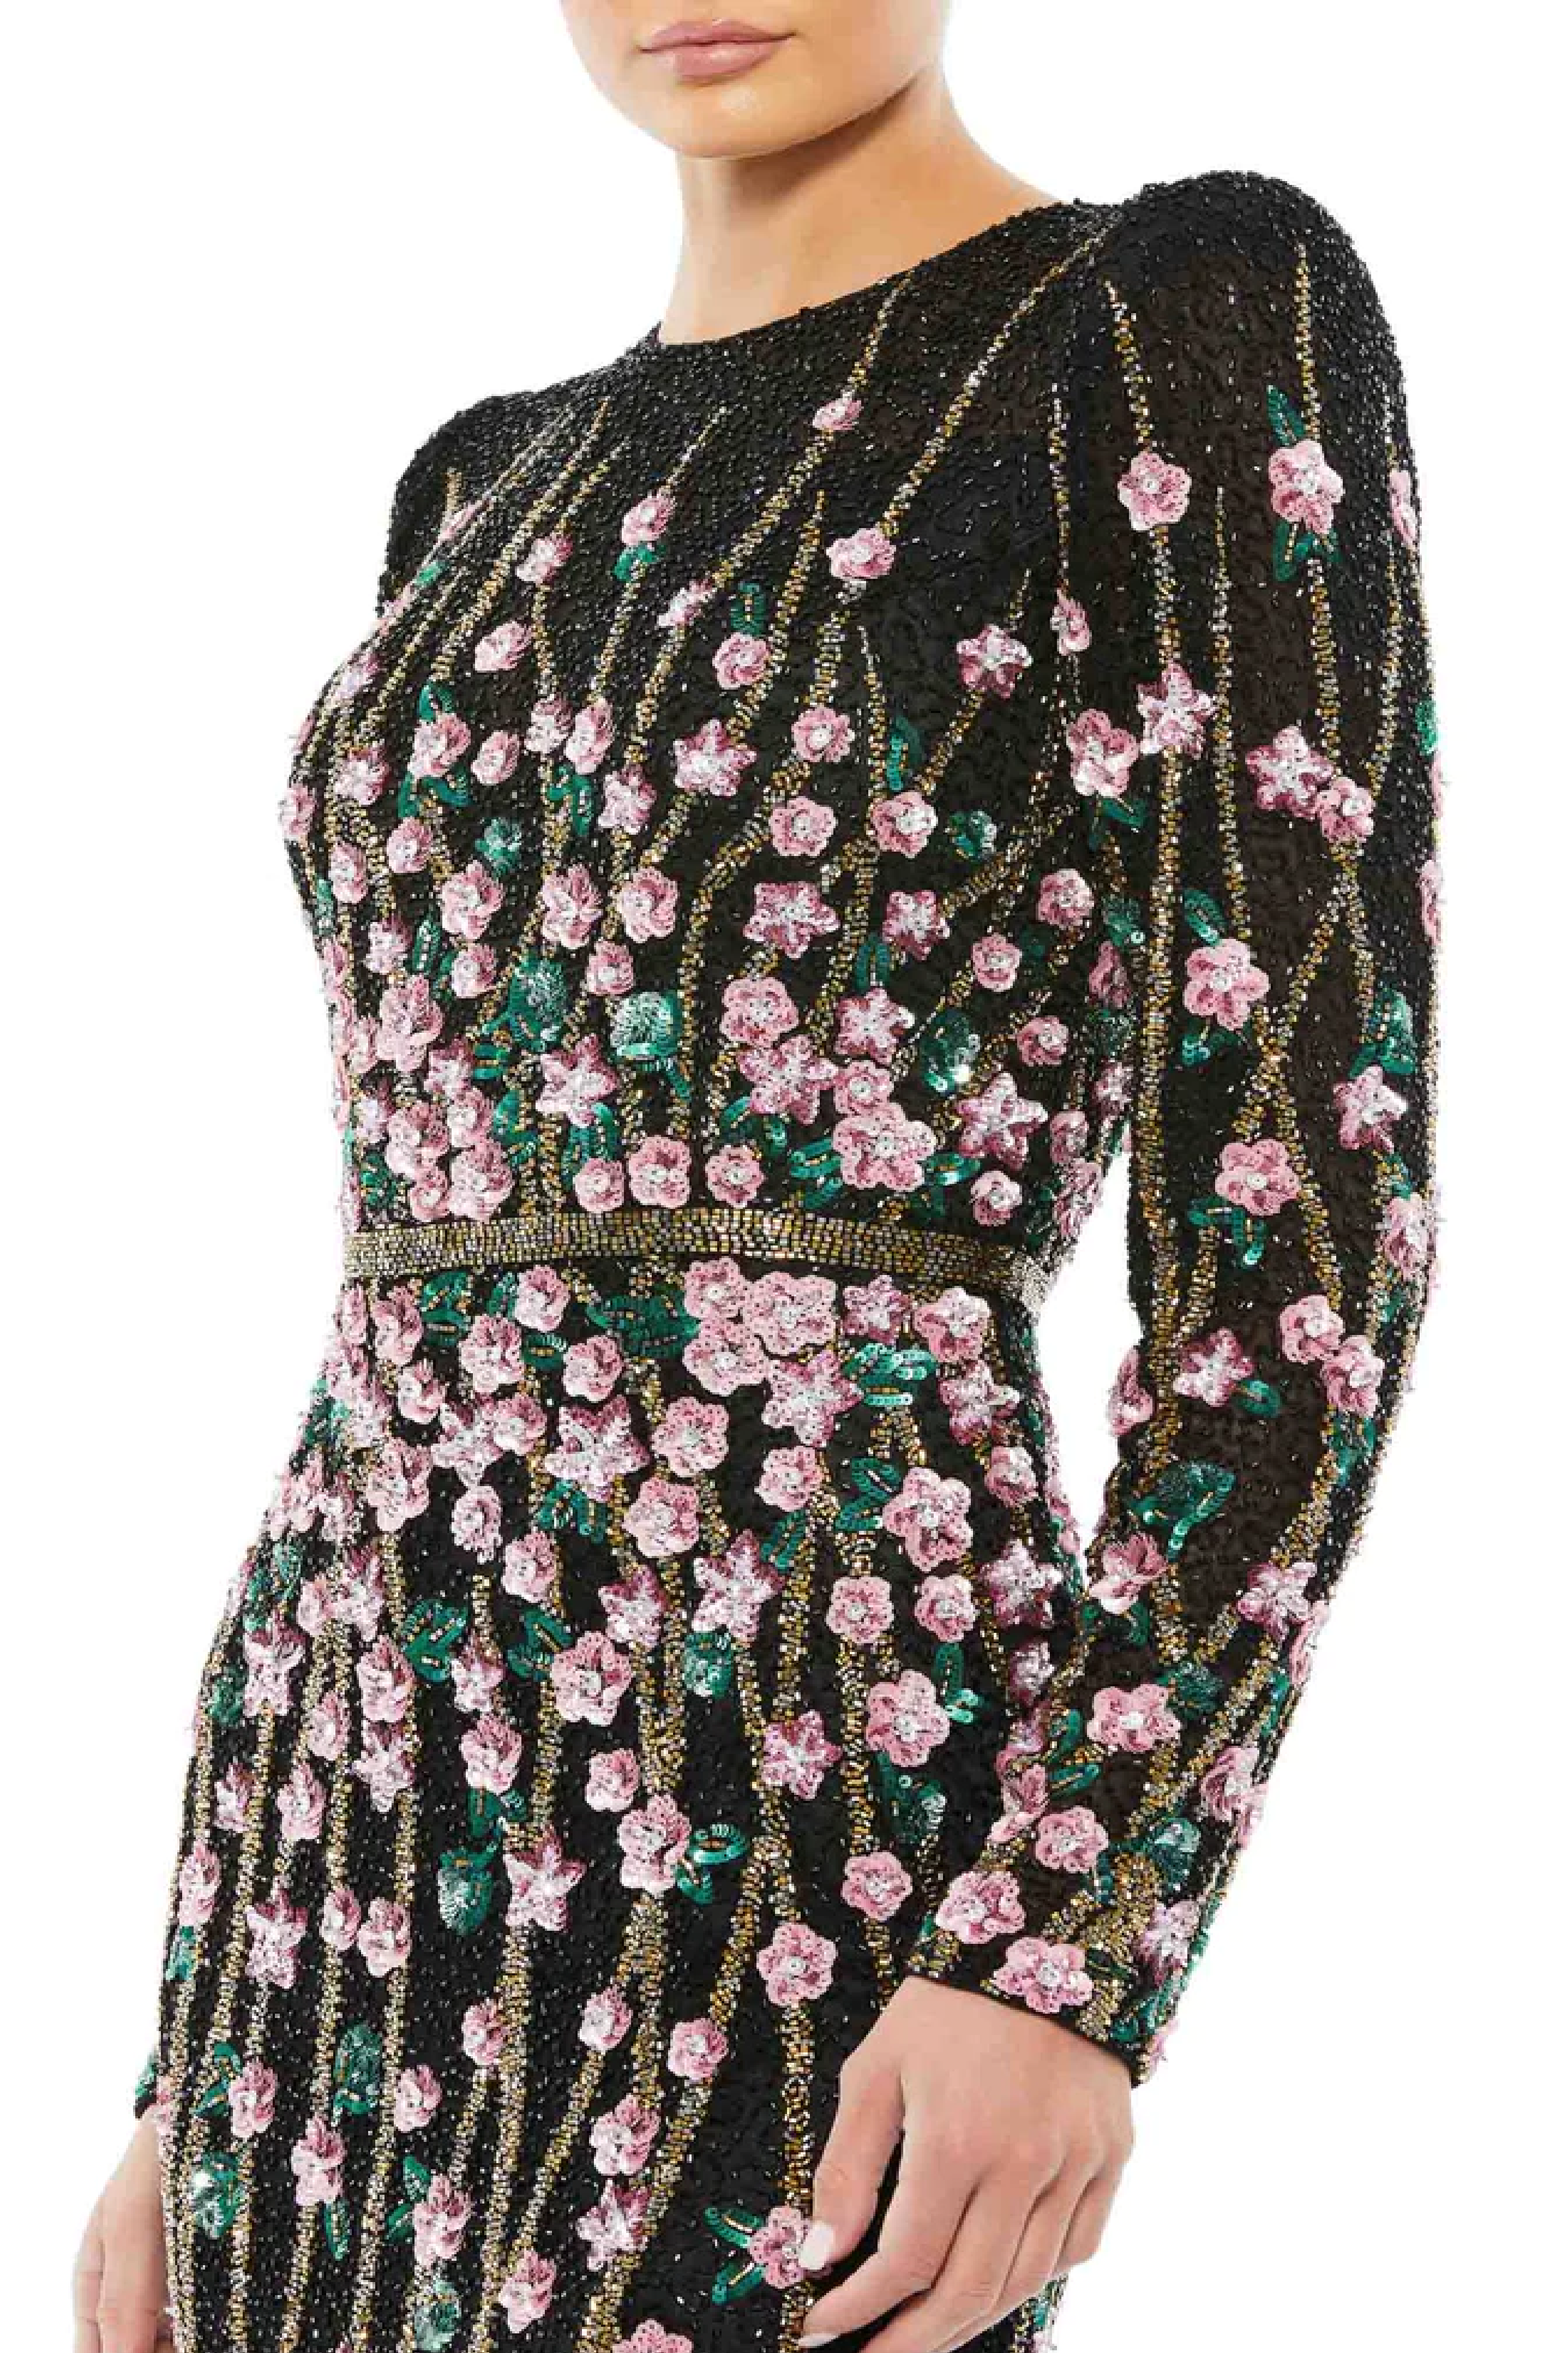 Pristine Round Neckline Sequined Floral Dress